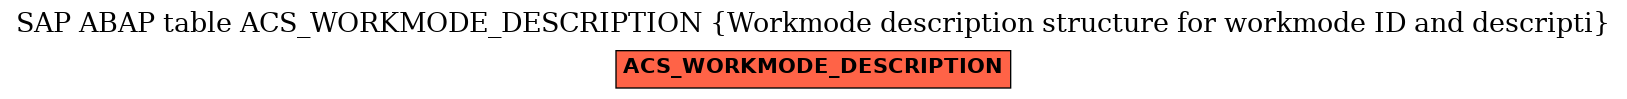 E-R Diagram for table ACS_WORKMODE_DESCRIPTION (Workmode description structure for workmode ID and descripti)